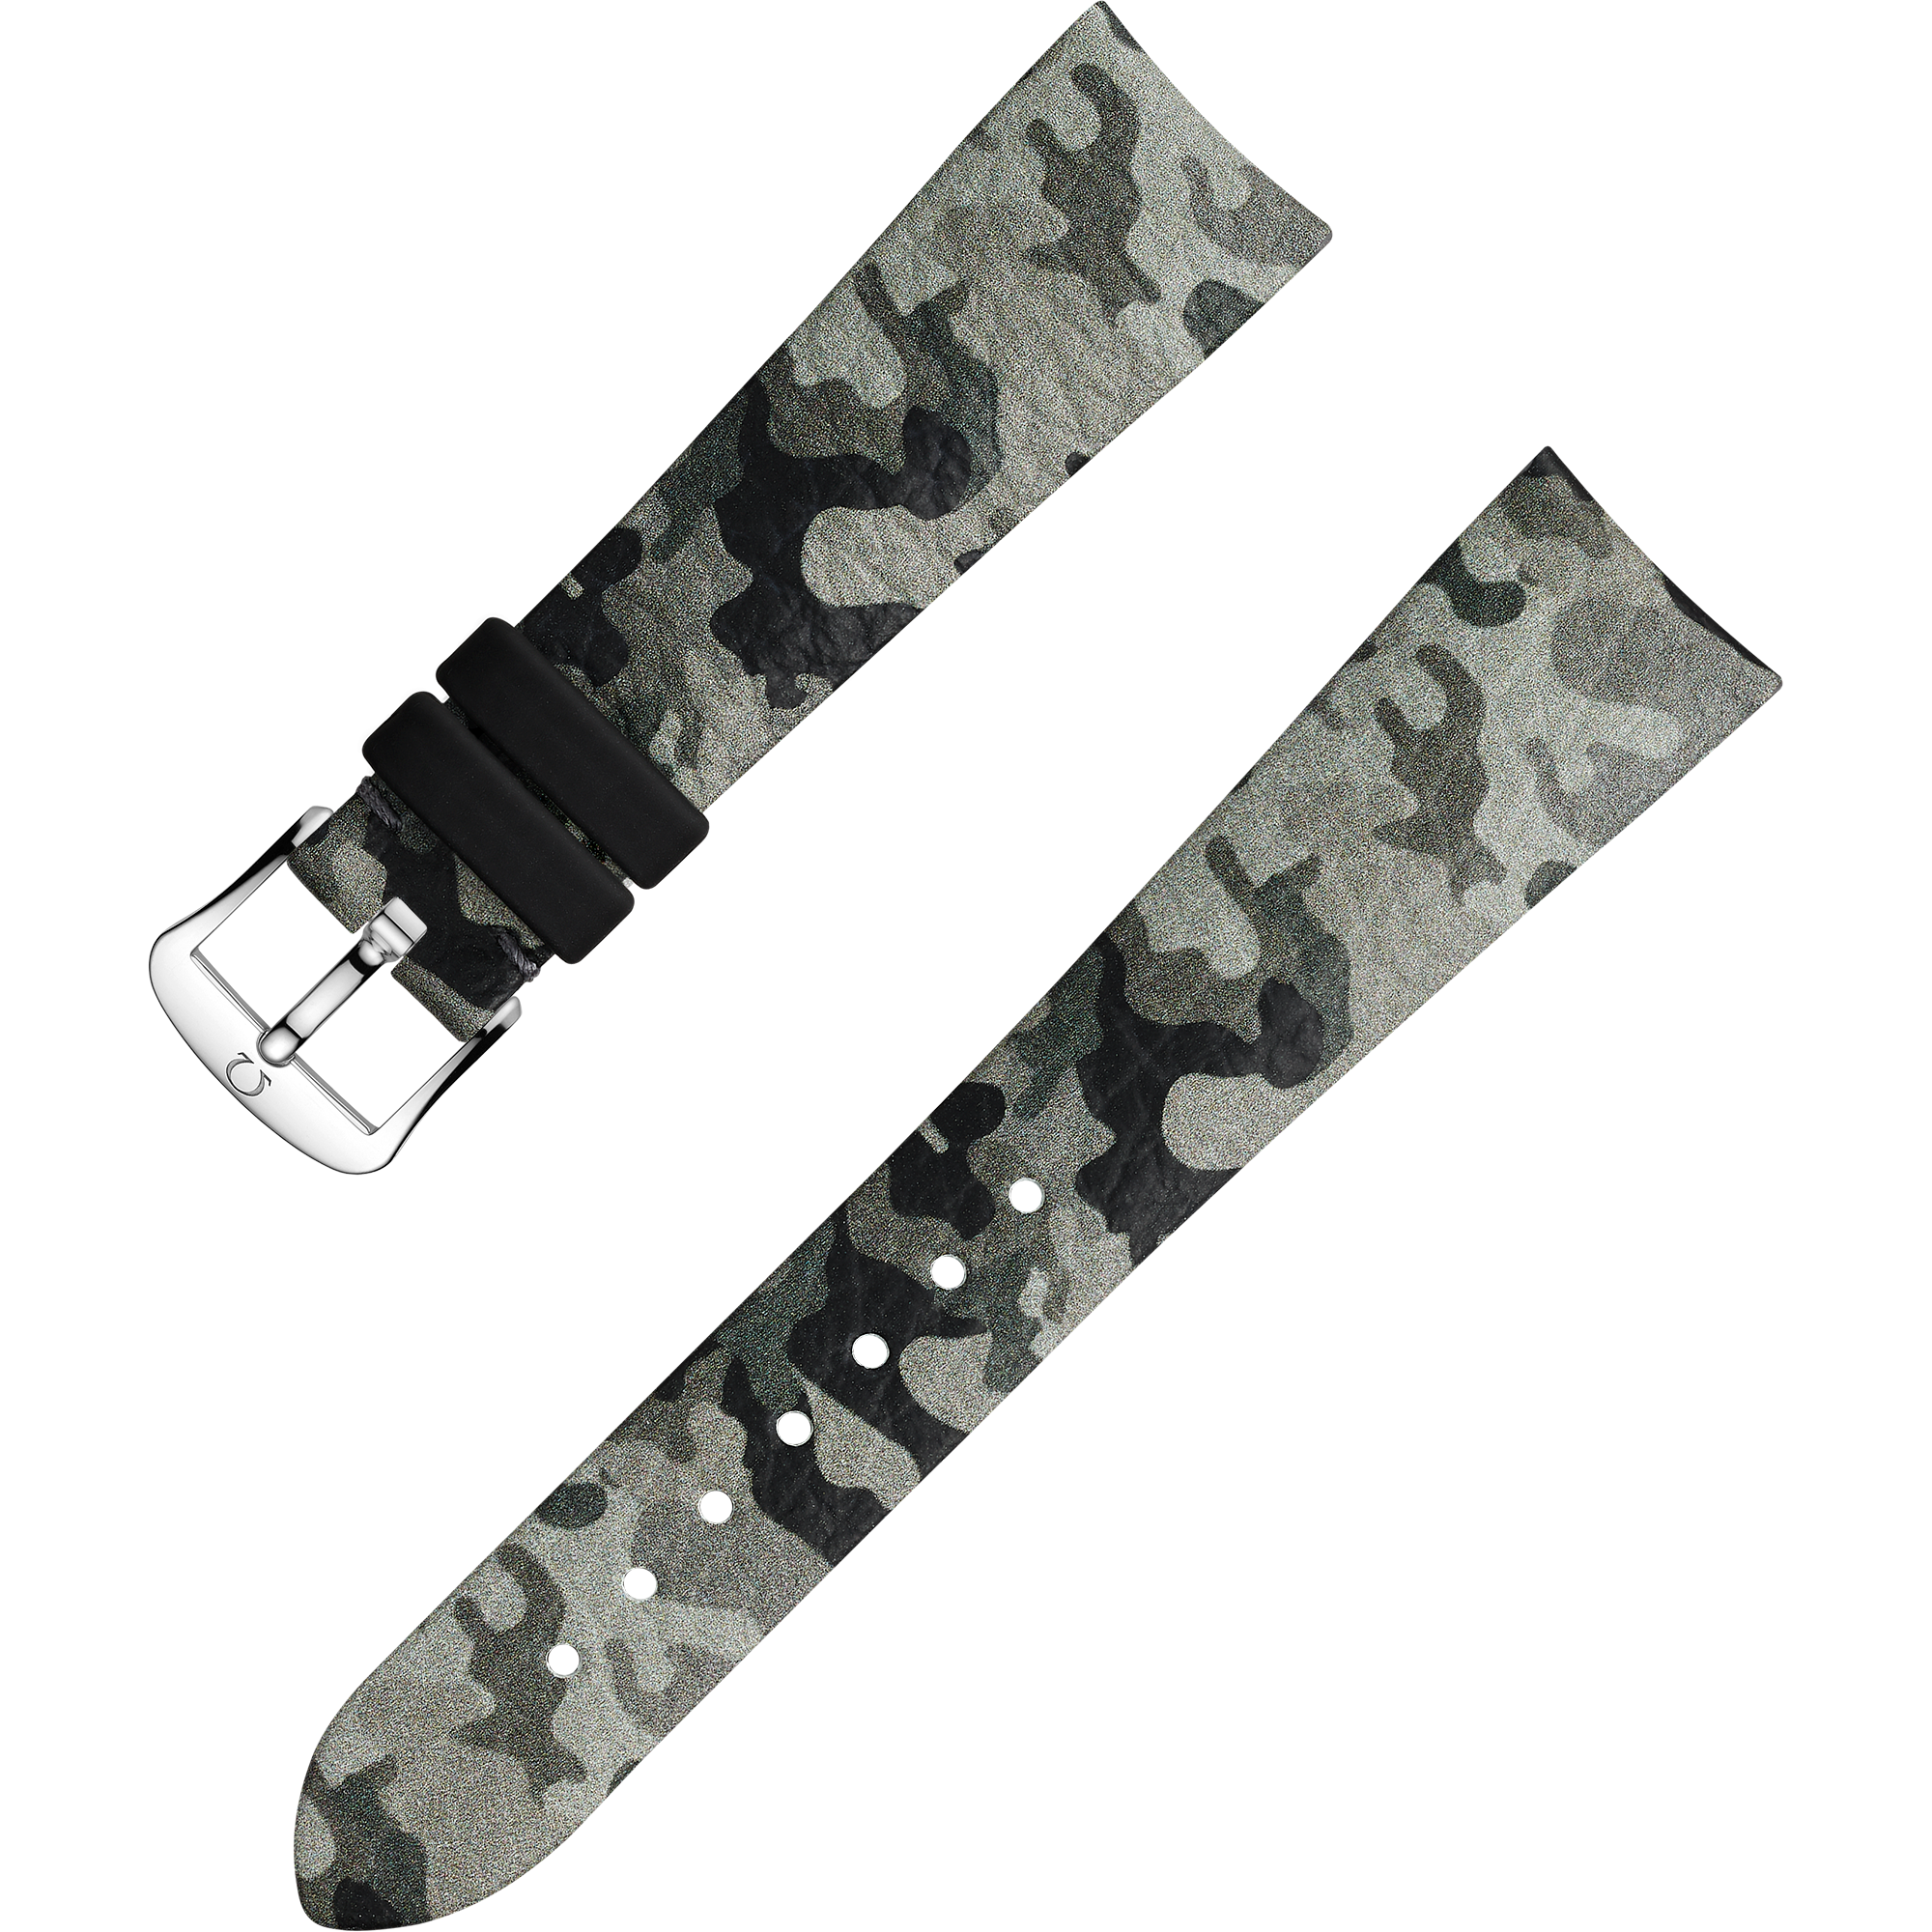 Two-piece strap - Grey camo leather strap with pin buckle - 032CUZ011912W